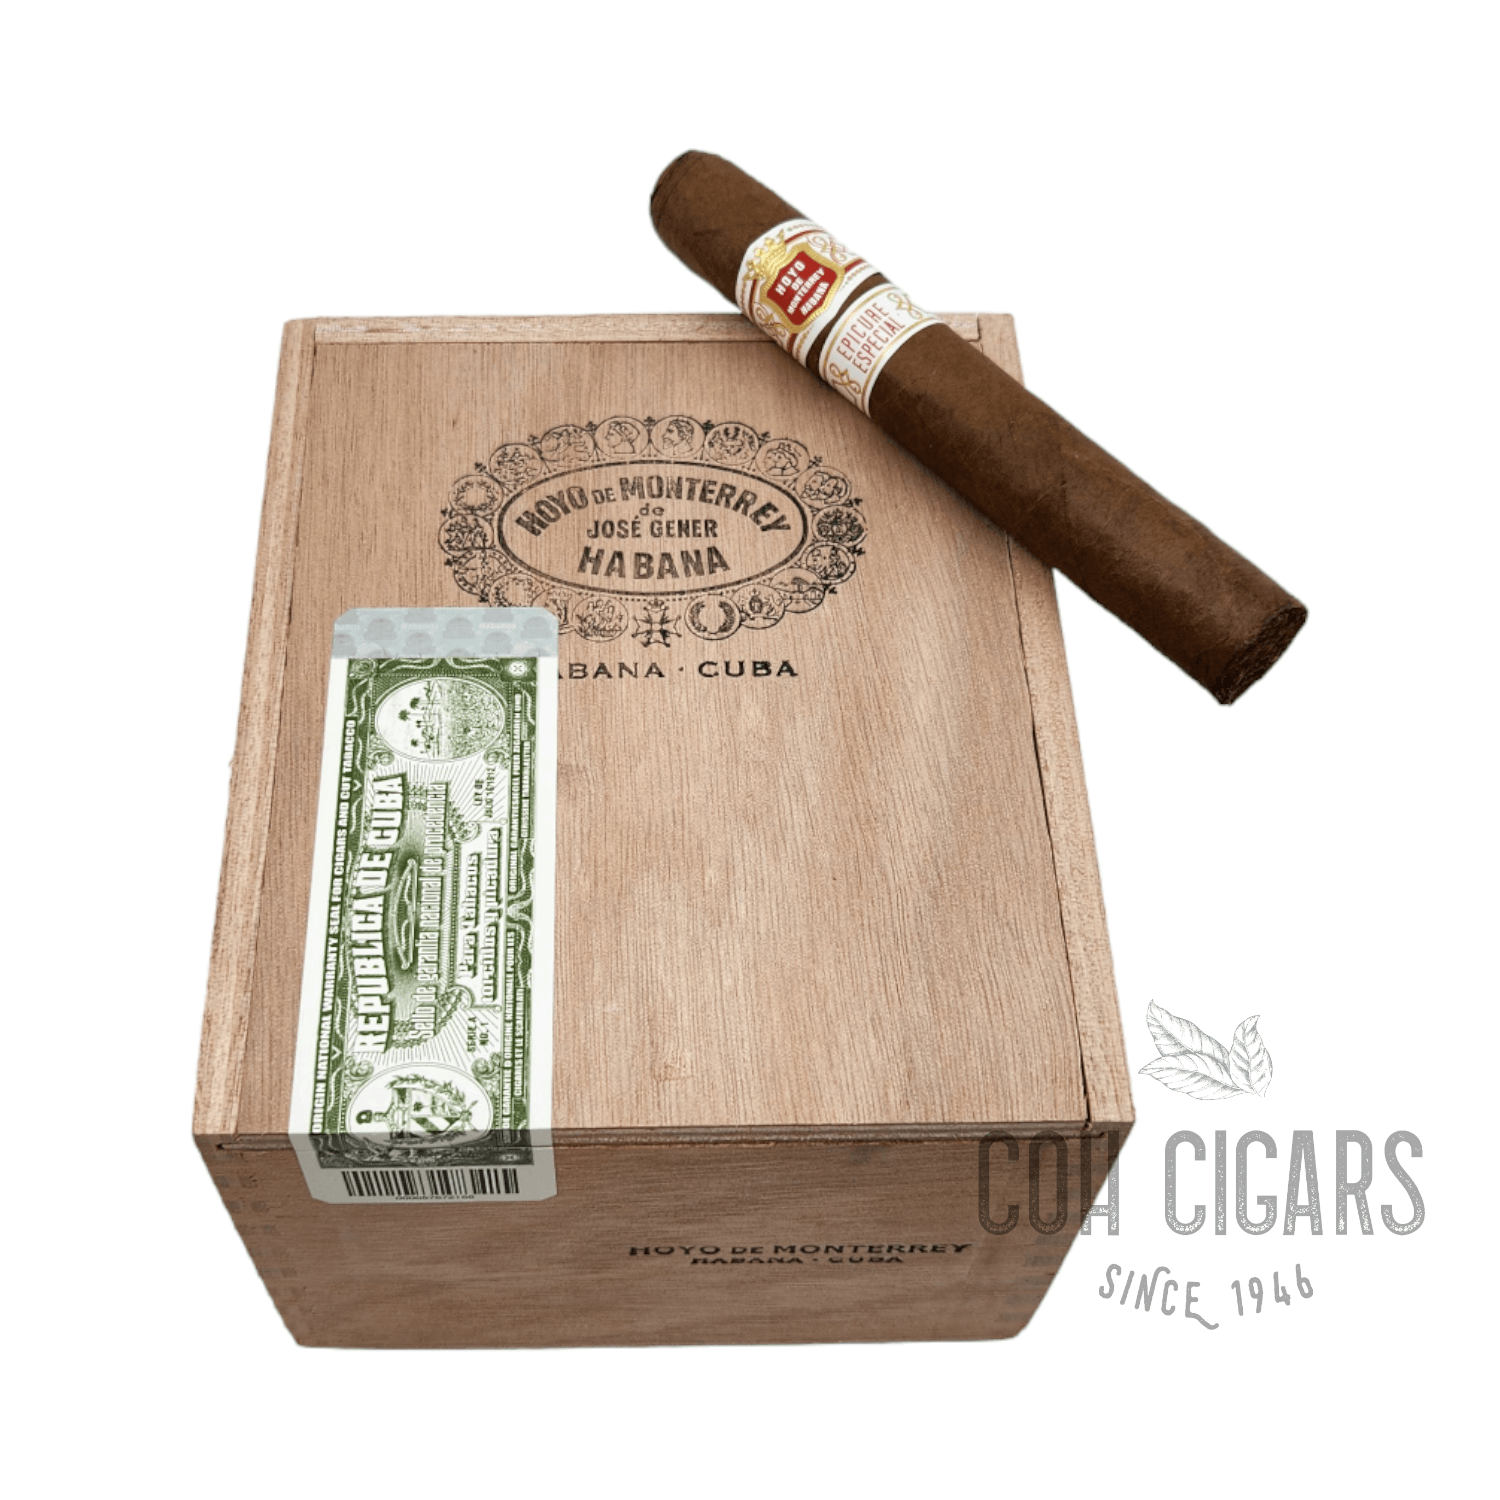 Hoyo de Monterrey Cigar | Epicure Especial | Box 25 - hk.cohcigars